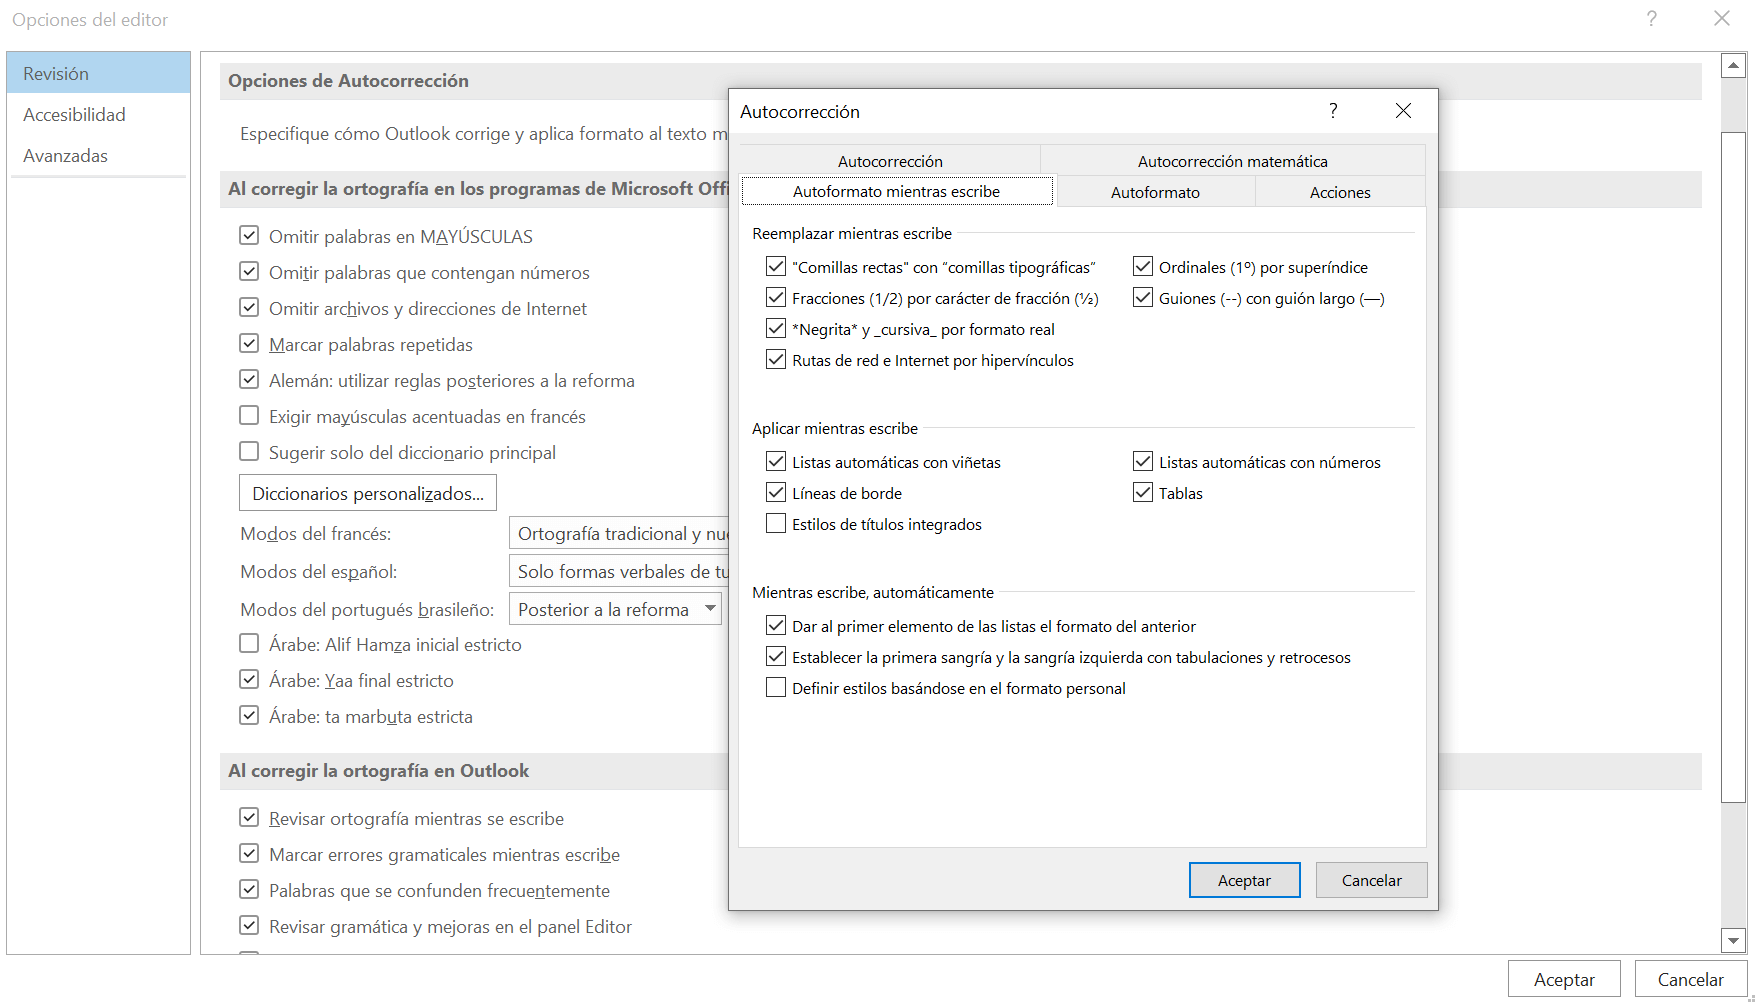 Opción de Outlook “Autoformato mientras escribe” y “Autoformato”